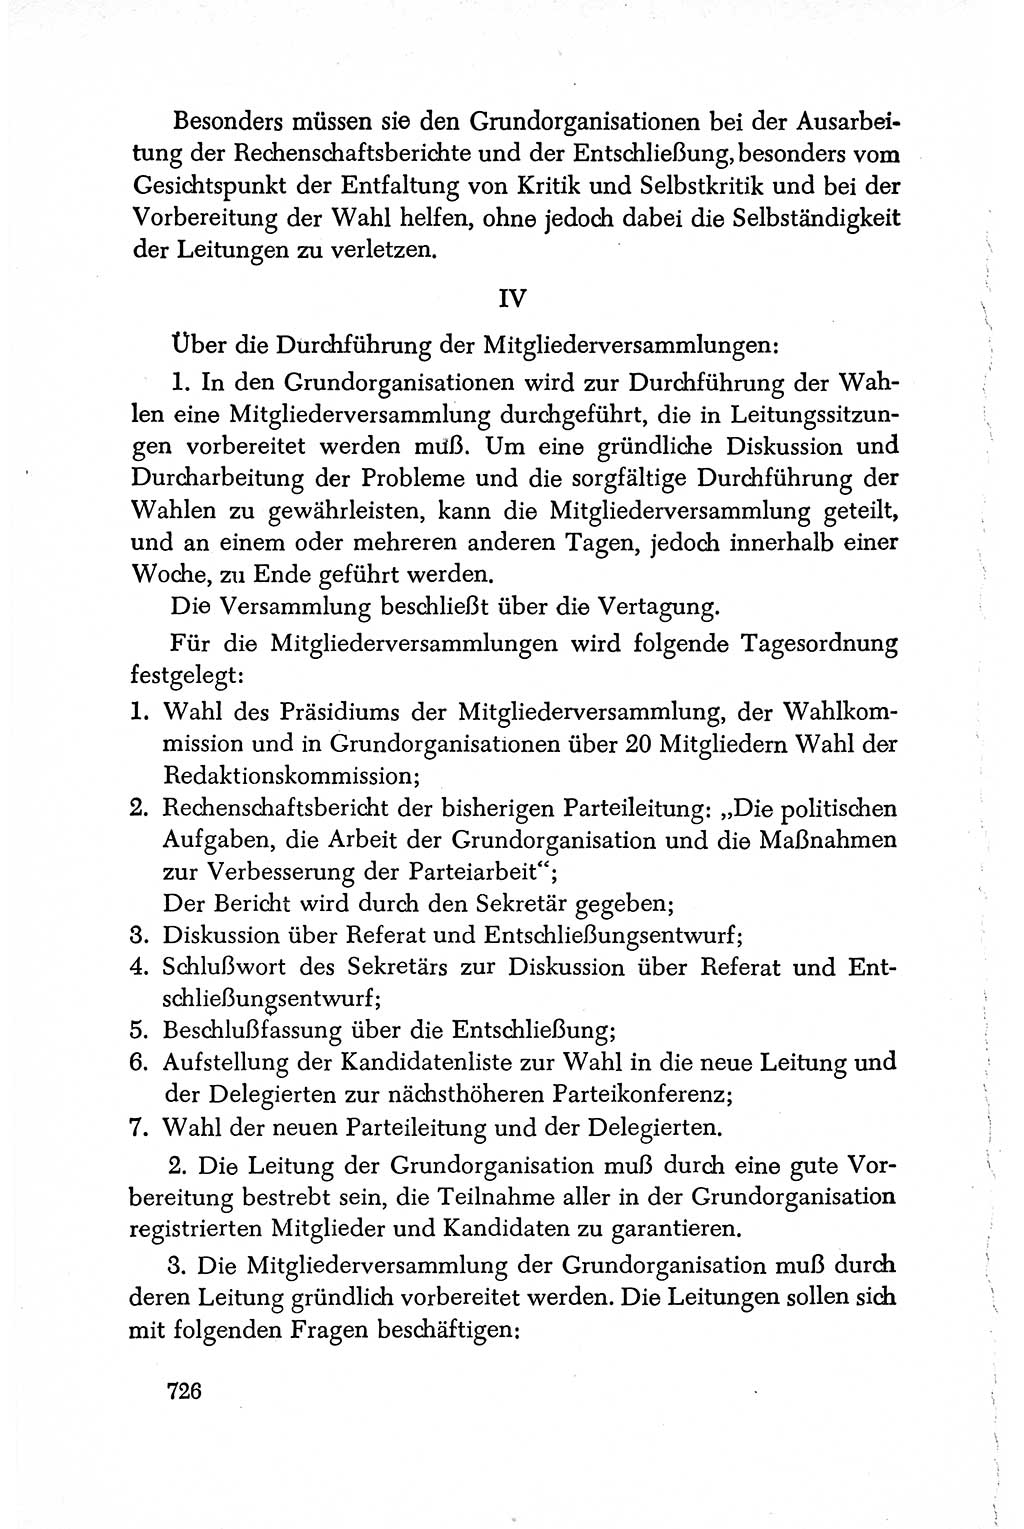 Dokumente der Sozialistischen Einheitspartei Deutschlands (SED) [Deutsche Demokratische Republik (DDR)] 1950-1952, Seite 726 (Dok. SED DDR 1950-1952, S. 726)